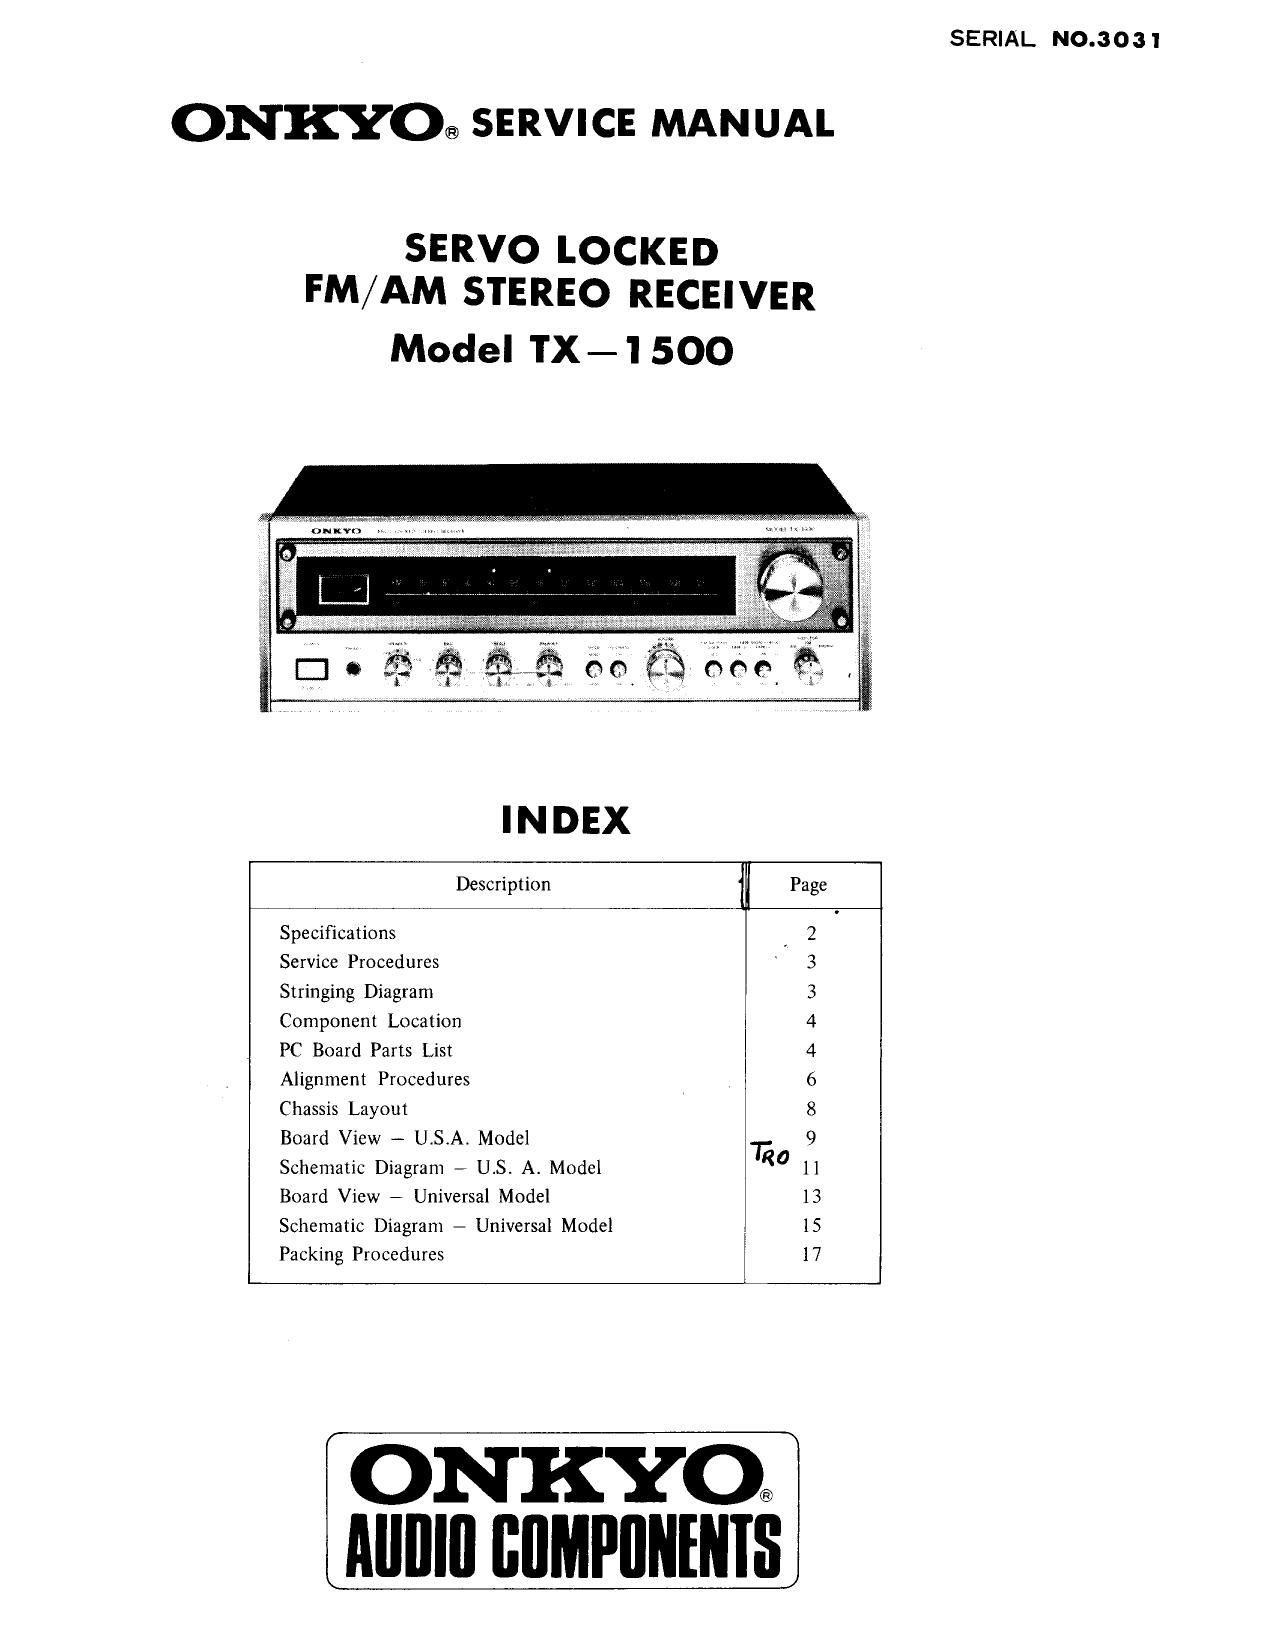 Onkyo TX 1500 Service Manual